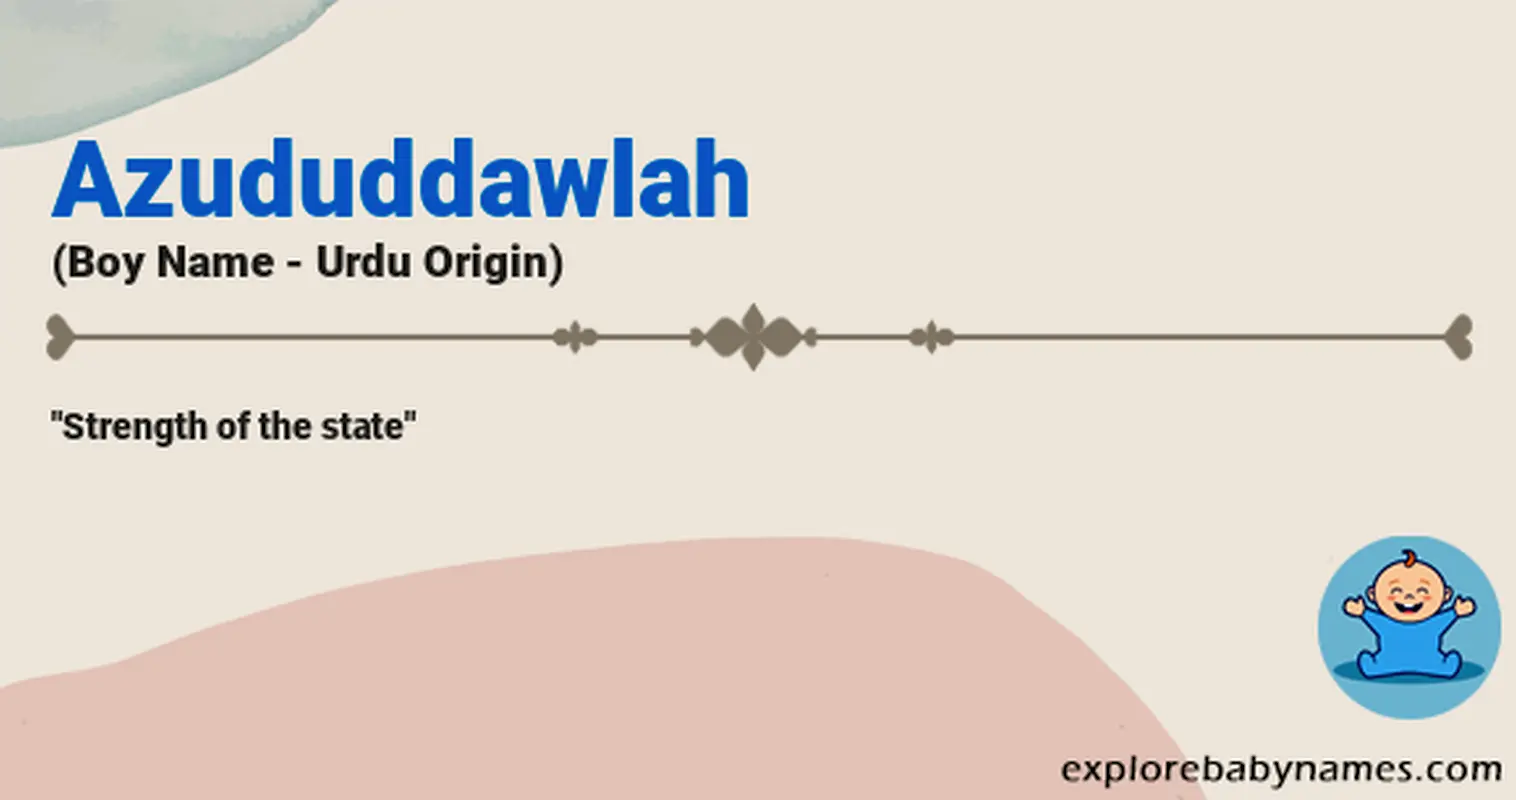 Meaning of Azududdawlah